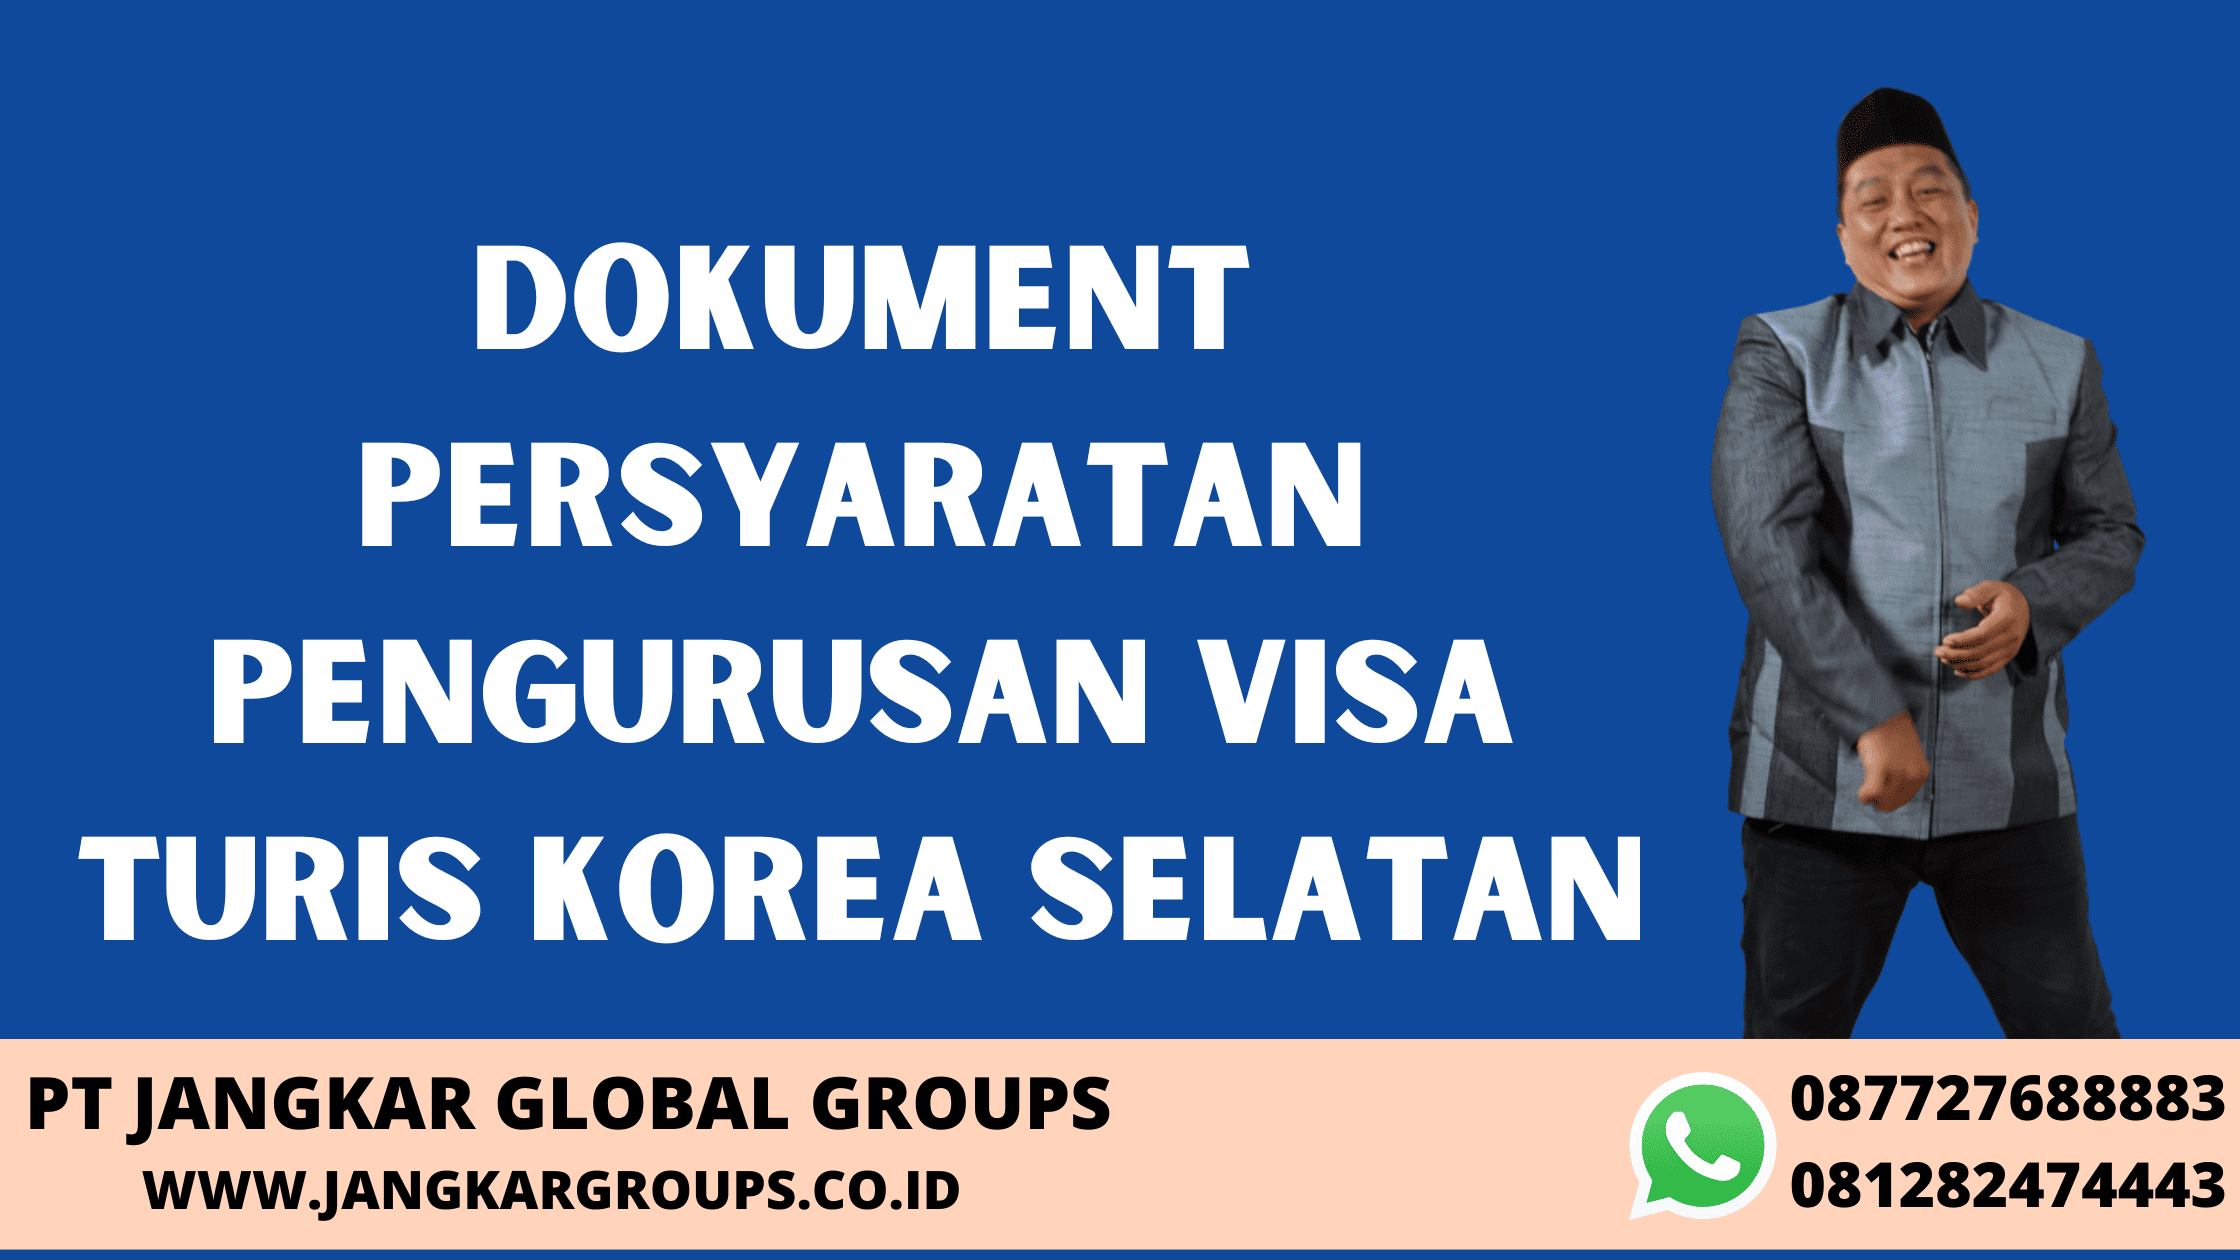 Dokument Persyaratan Pengurusan Visa Turis Korea Selatan